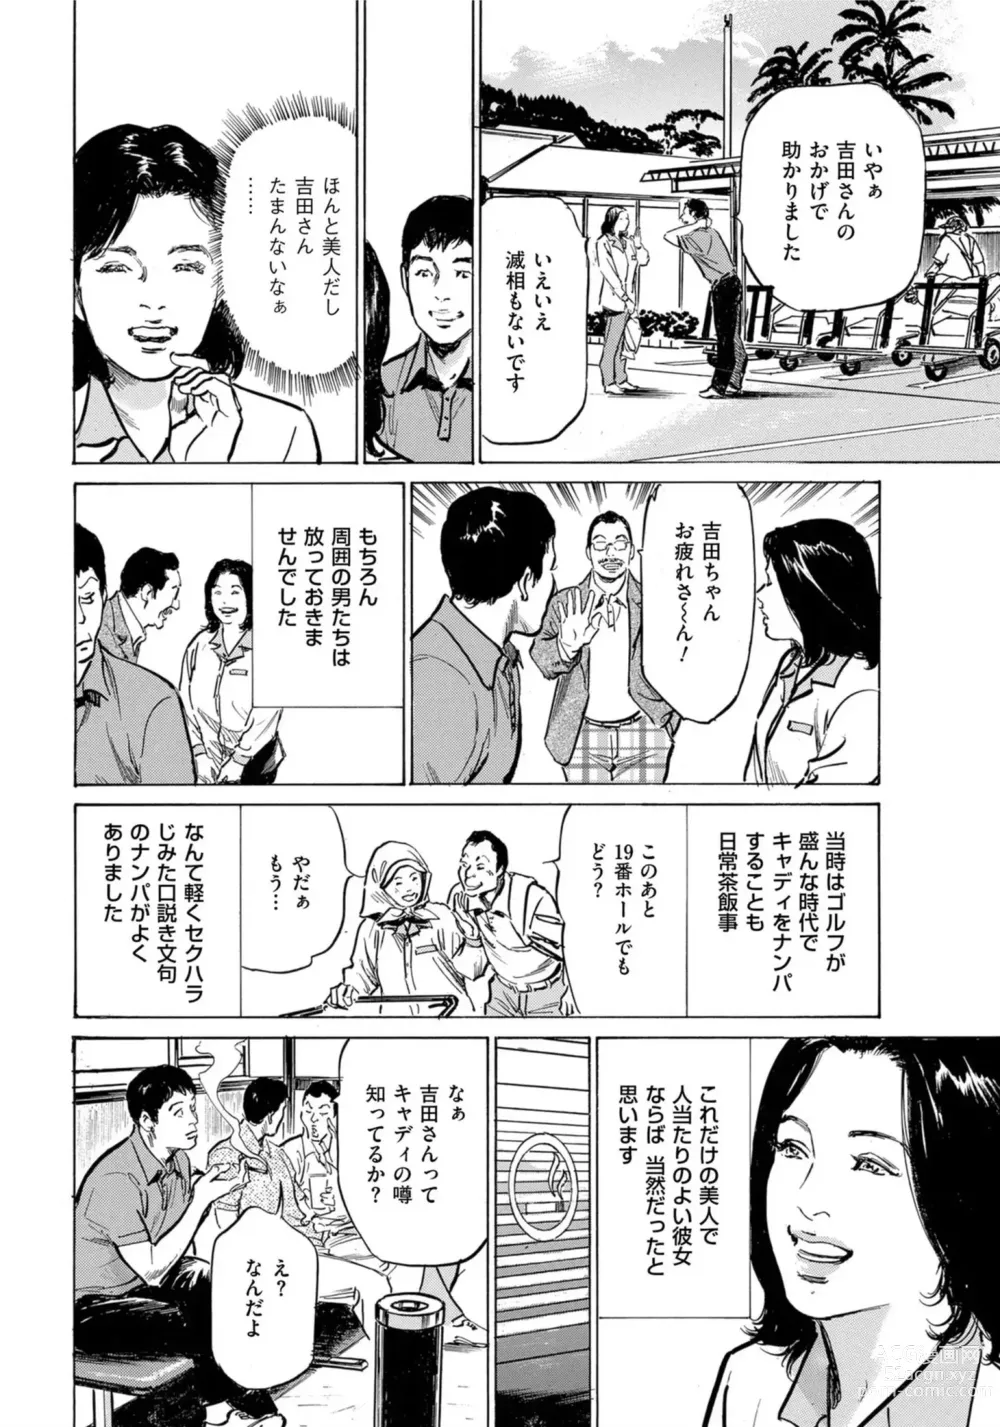 Page 5 of manga Hontou ni Atta Omowazu Zawatsuku Totteoki no Hanashi 14 episodes